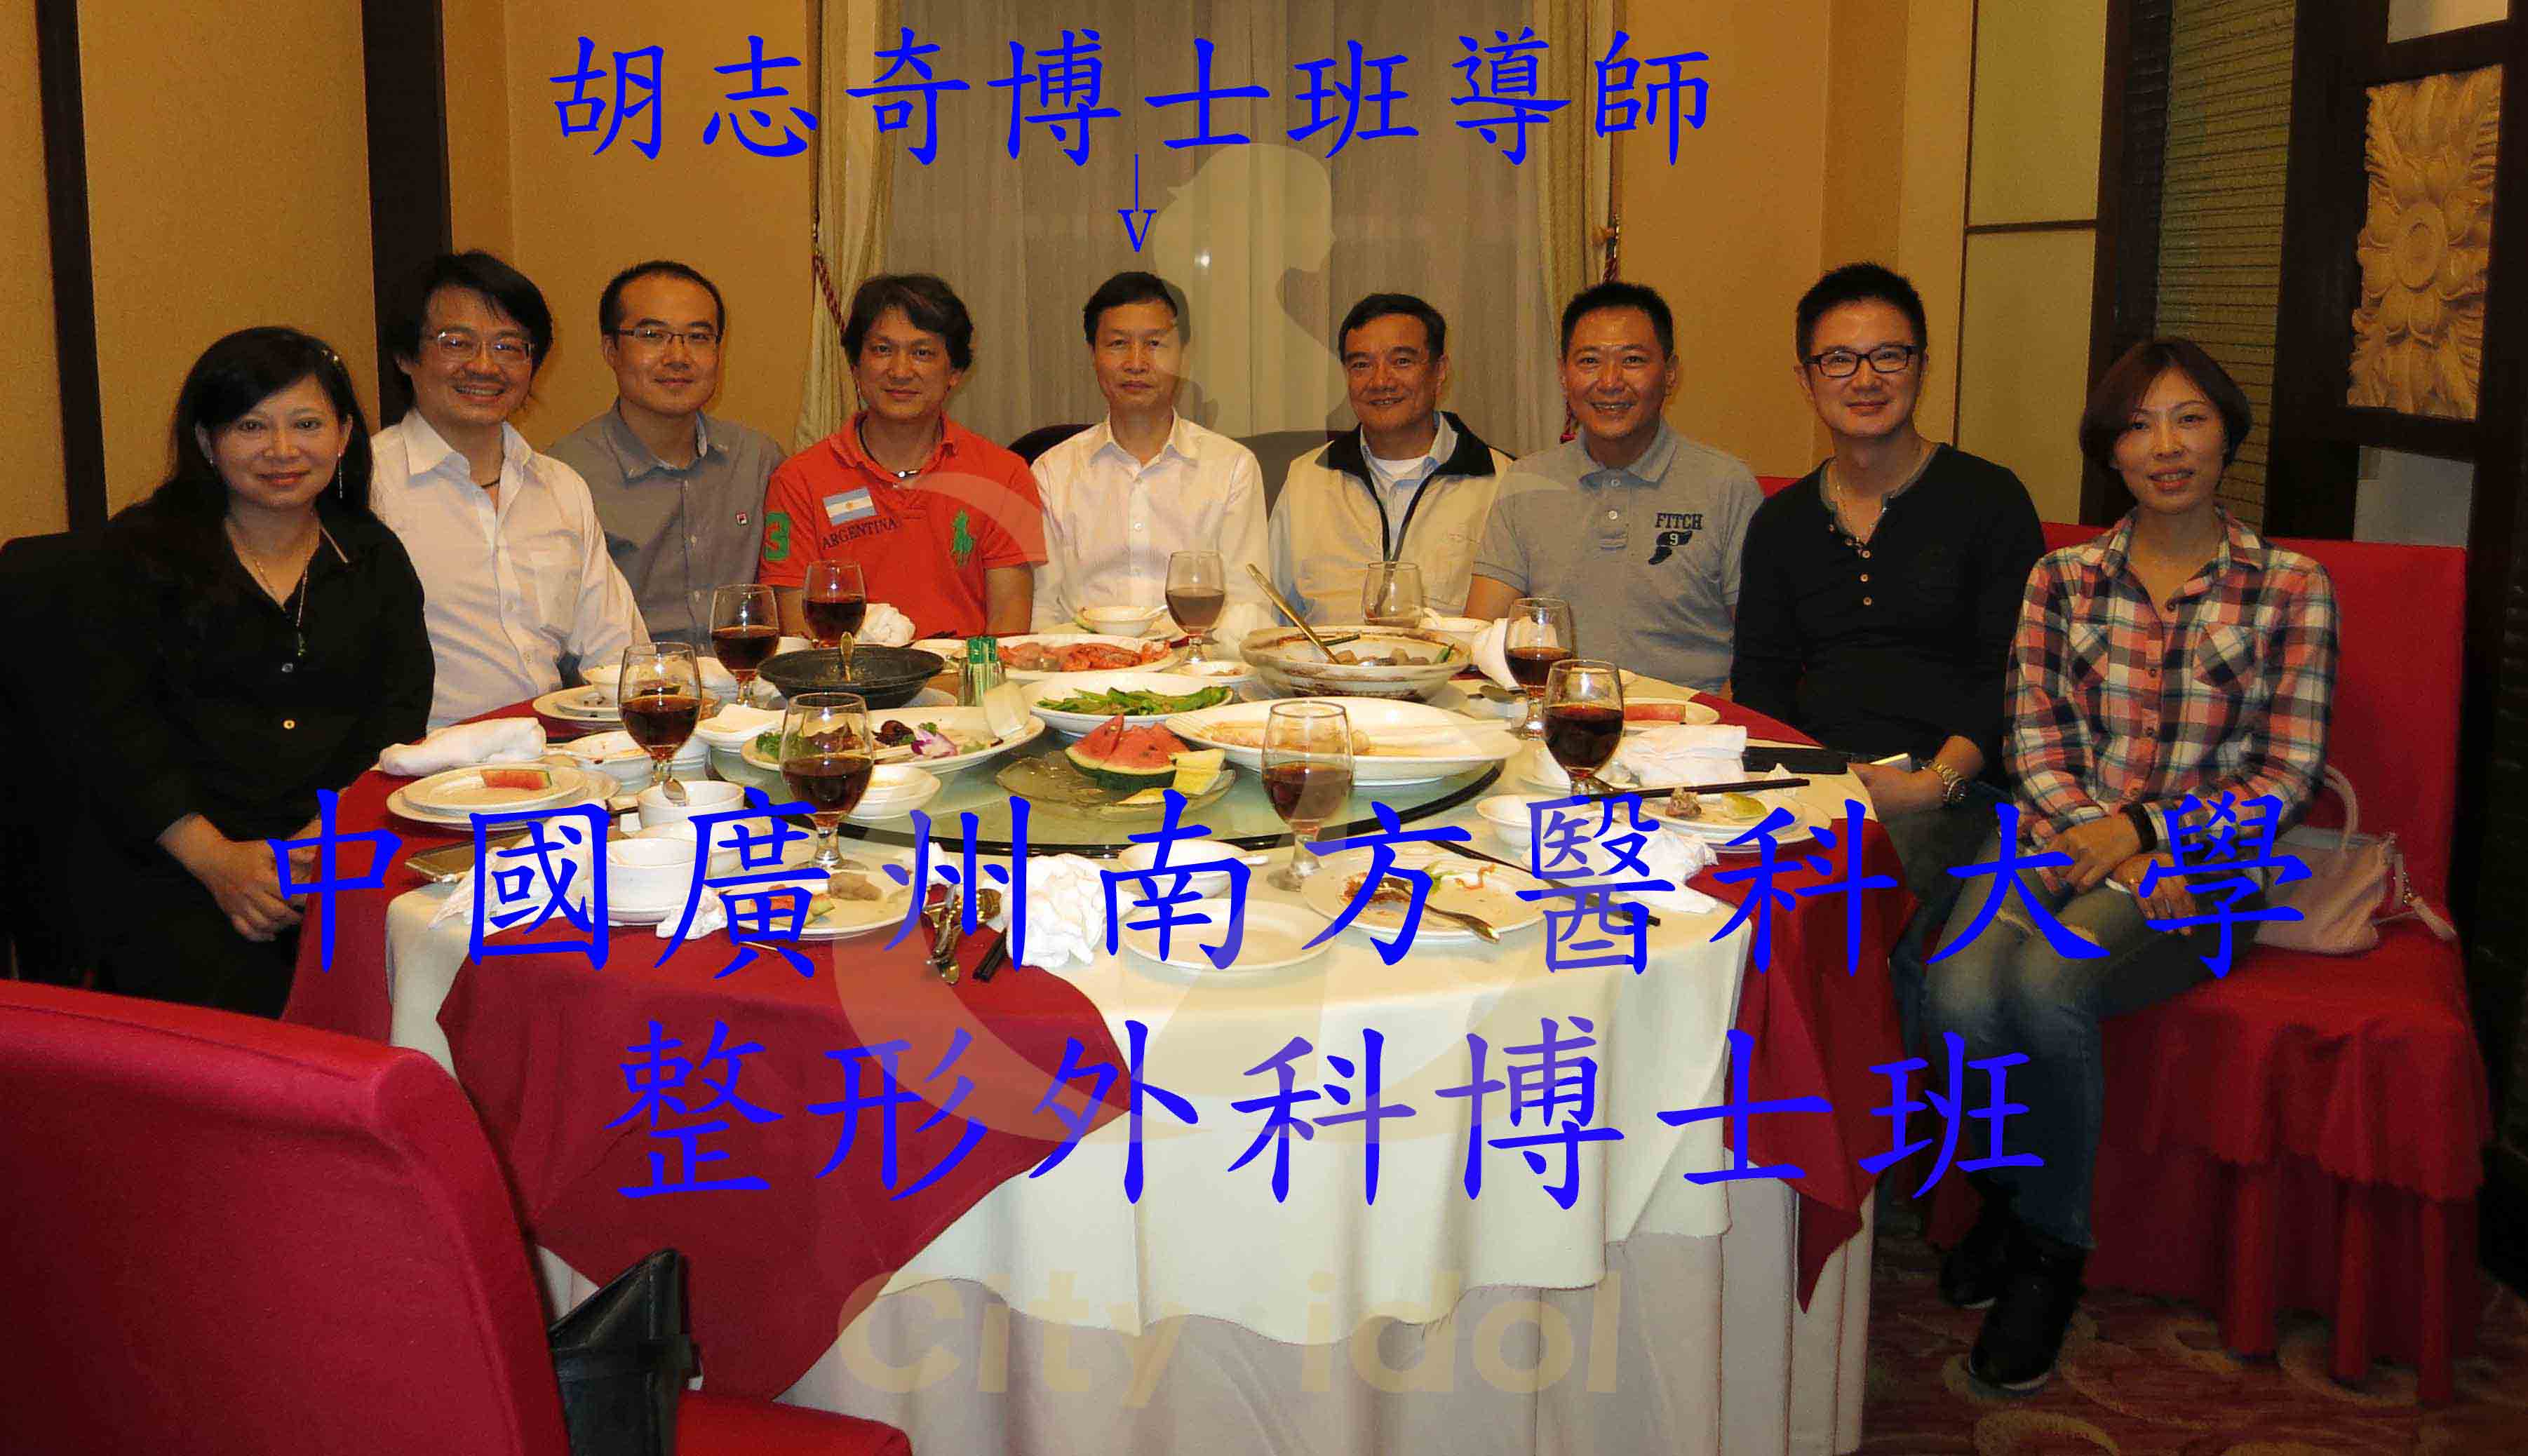 2014-11-30中國廣州南方醫科大學博士班 - 與志奇老師合照